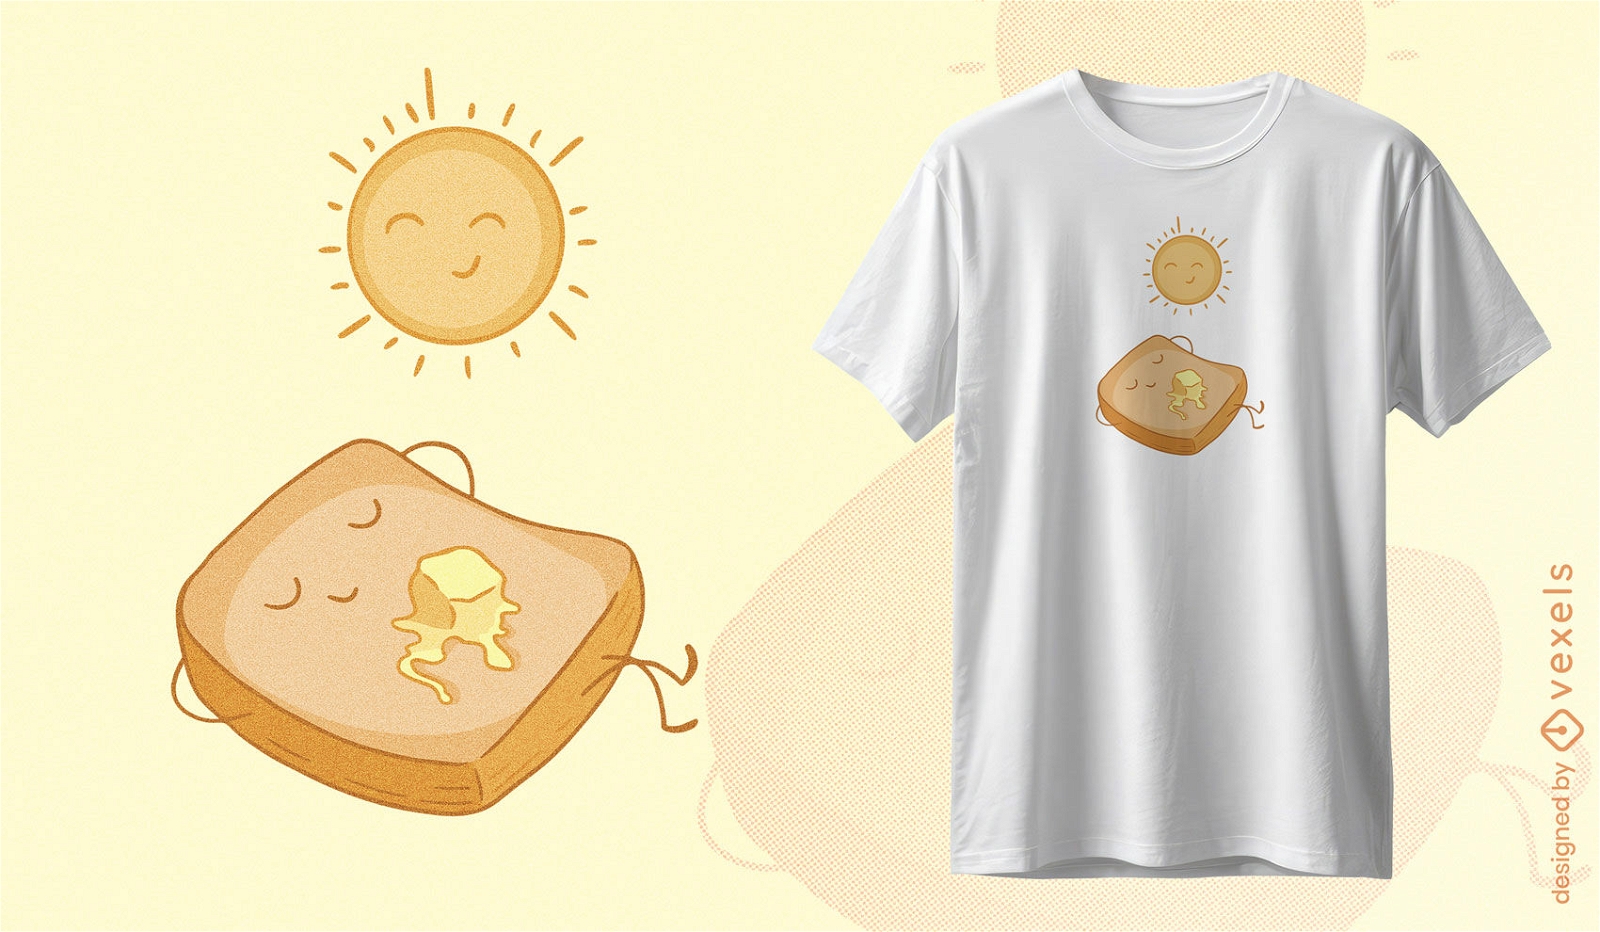 Diseño de camiseta de personajes de tostadas y sol.